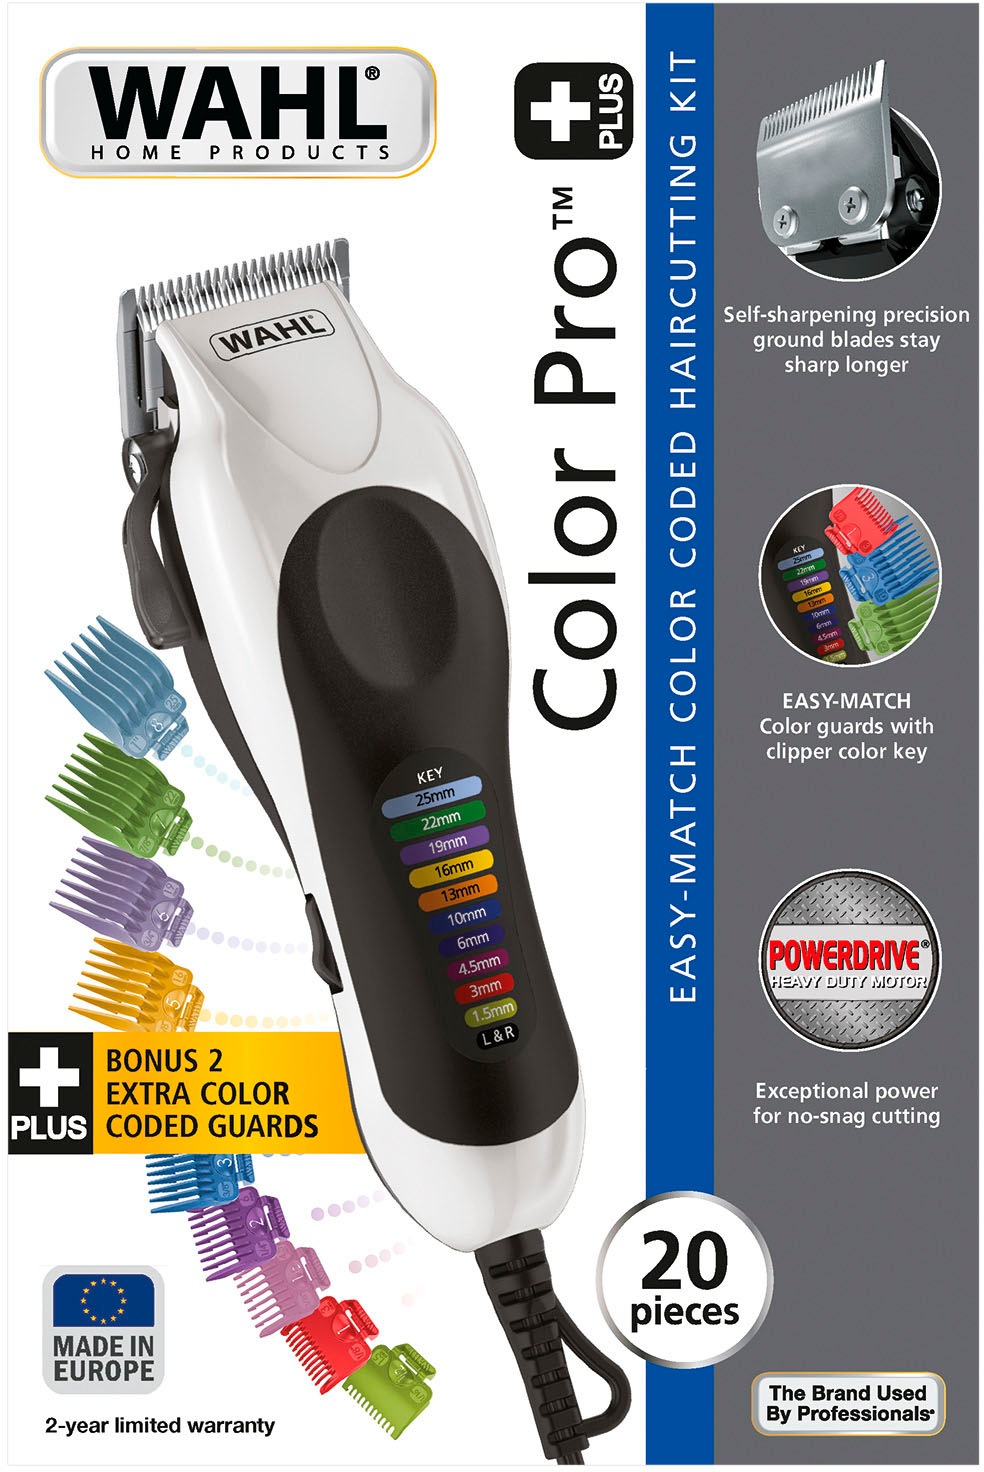 Plus 20104.0460«, Shop jetzt Pro Netz-Haarschneiderset OTTO im Online Haarschneider »Color Wahl